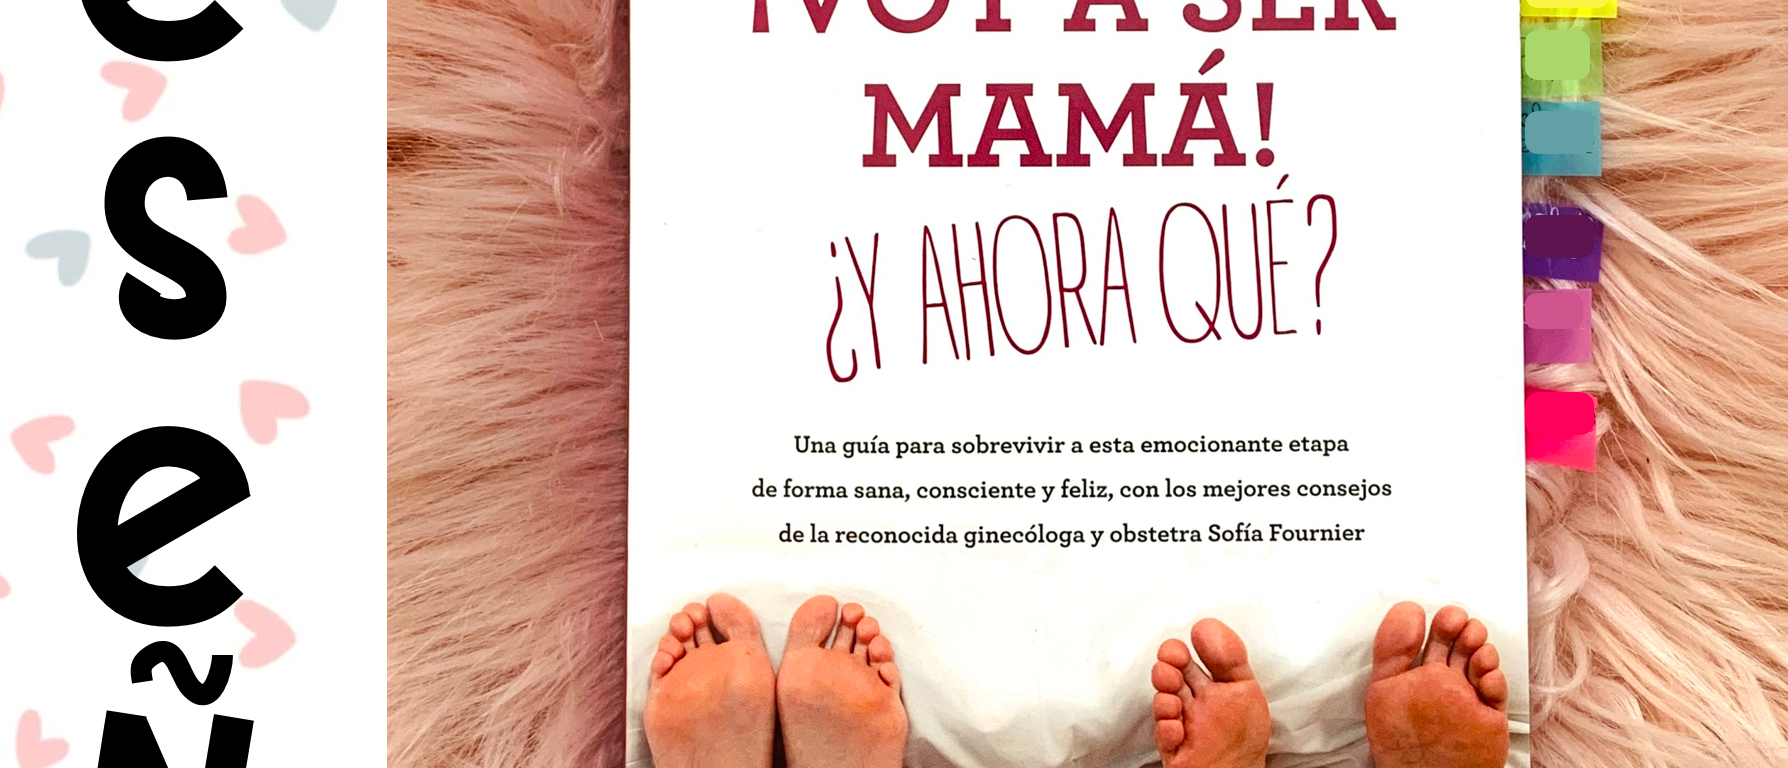 Reseña: ¡Voy a ser mamá! ¿Y ahora qué? – Entre iPads y Cuadernos